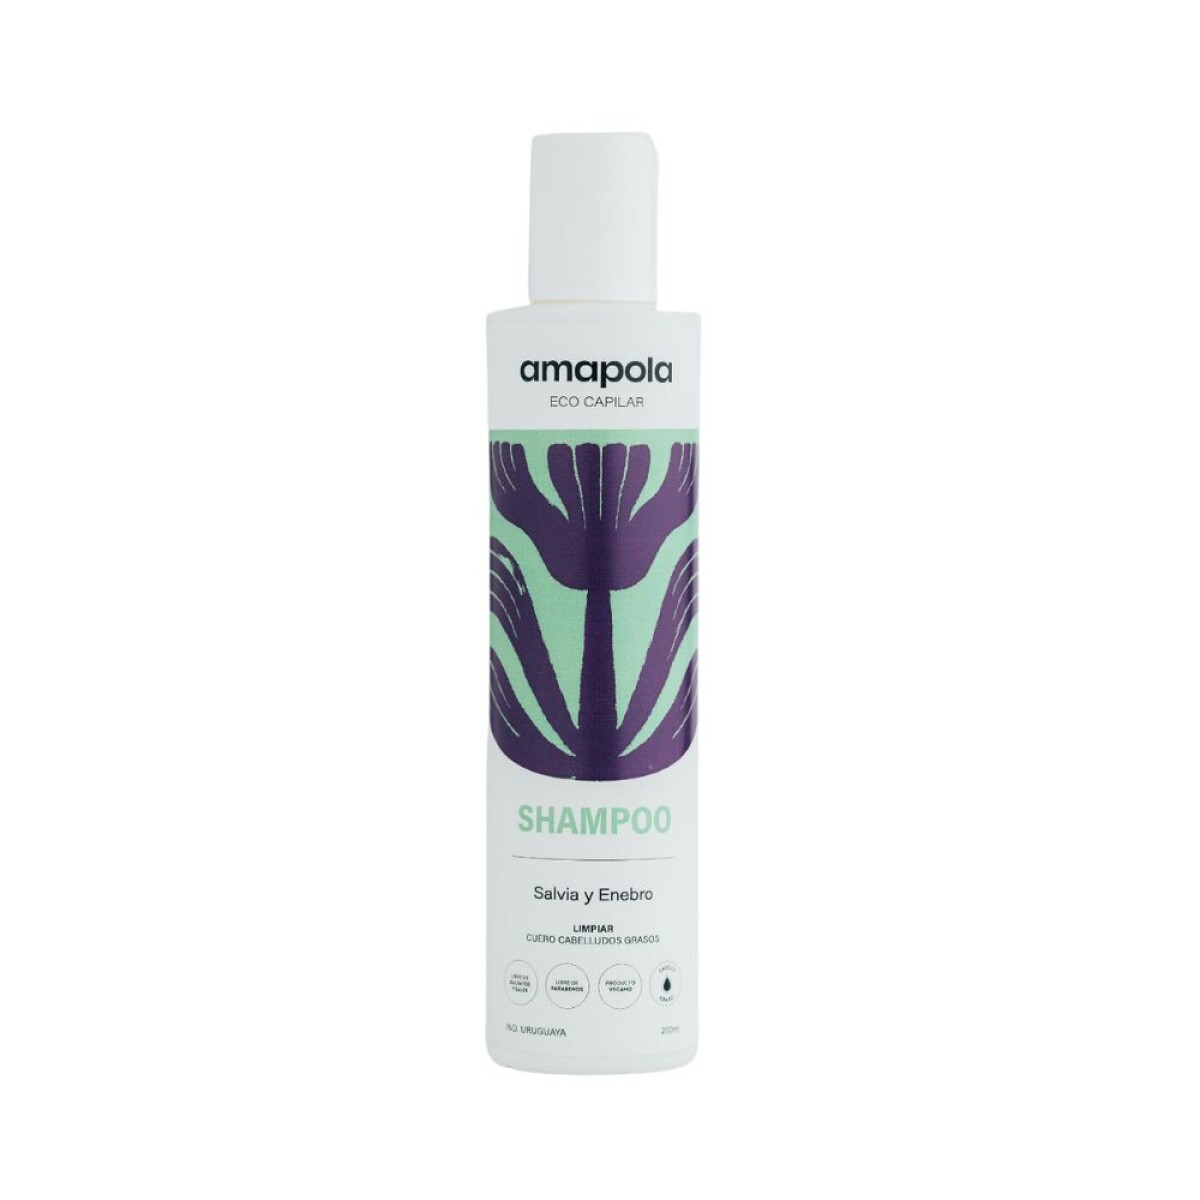 Shampoo Amapola Salvia y enebro 200ML 